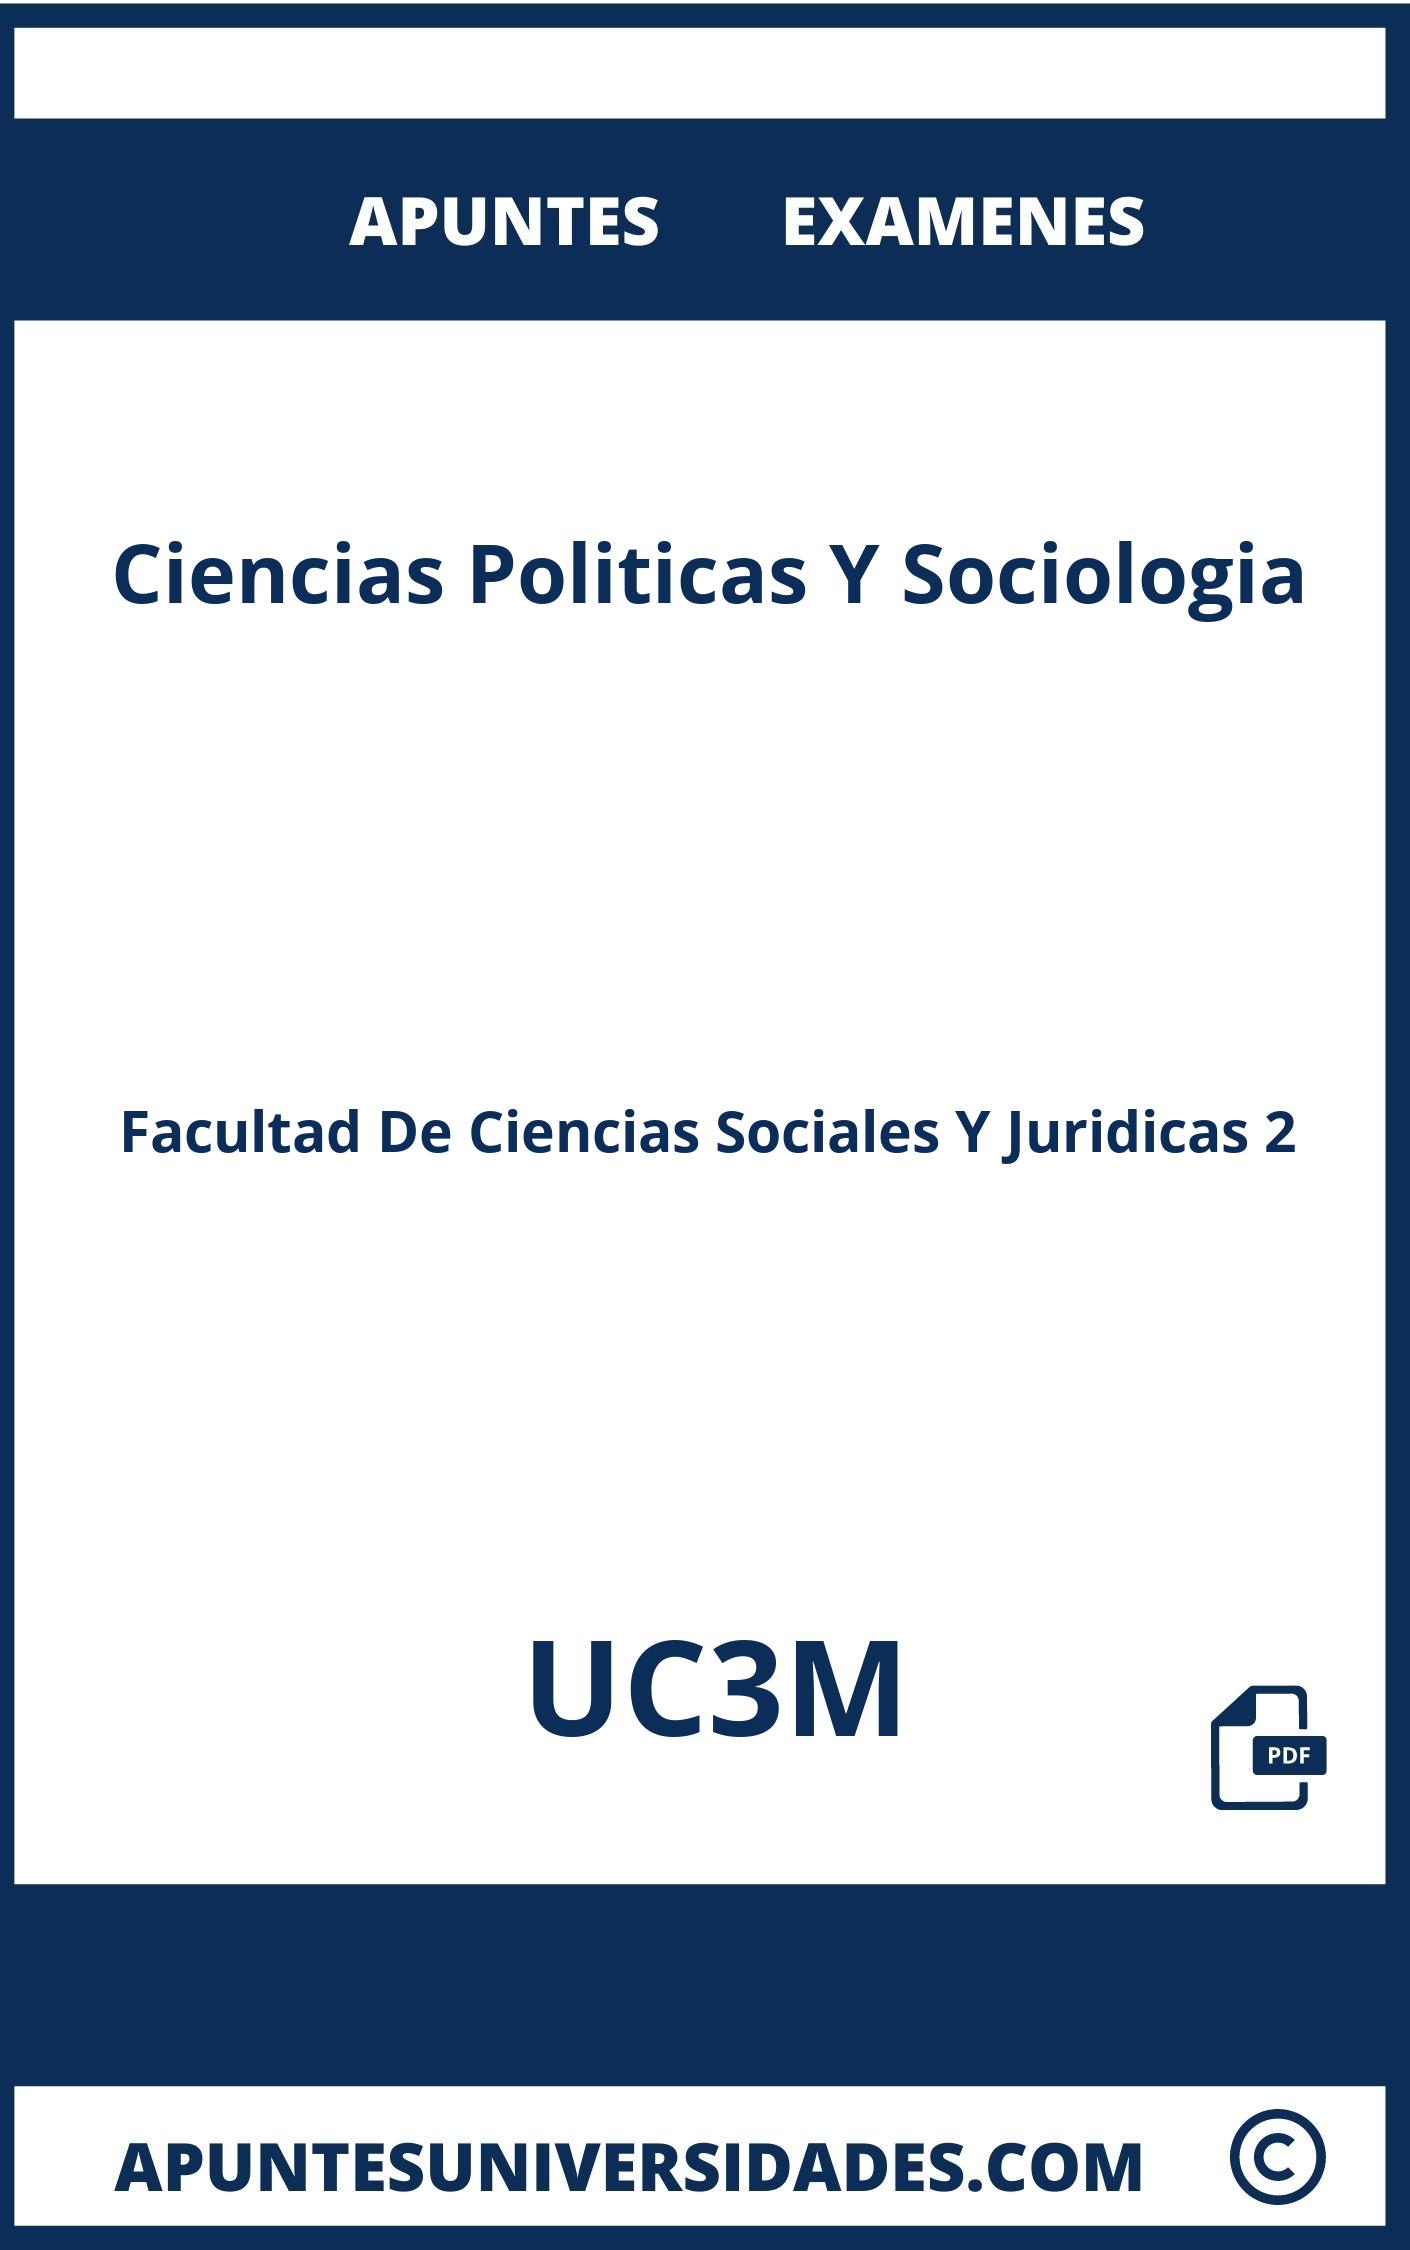 Apuntes y Examenes de Ciencias Politicas Y Sociologia UC3M